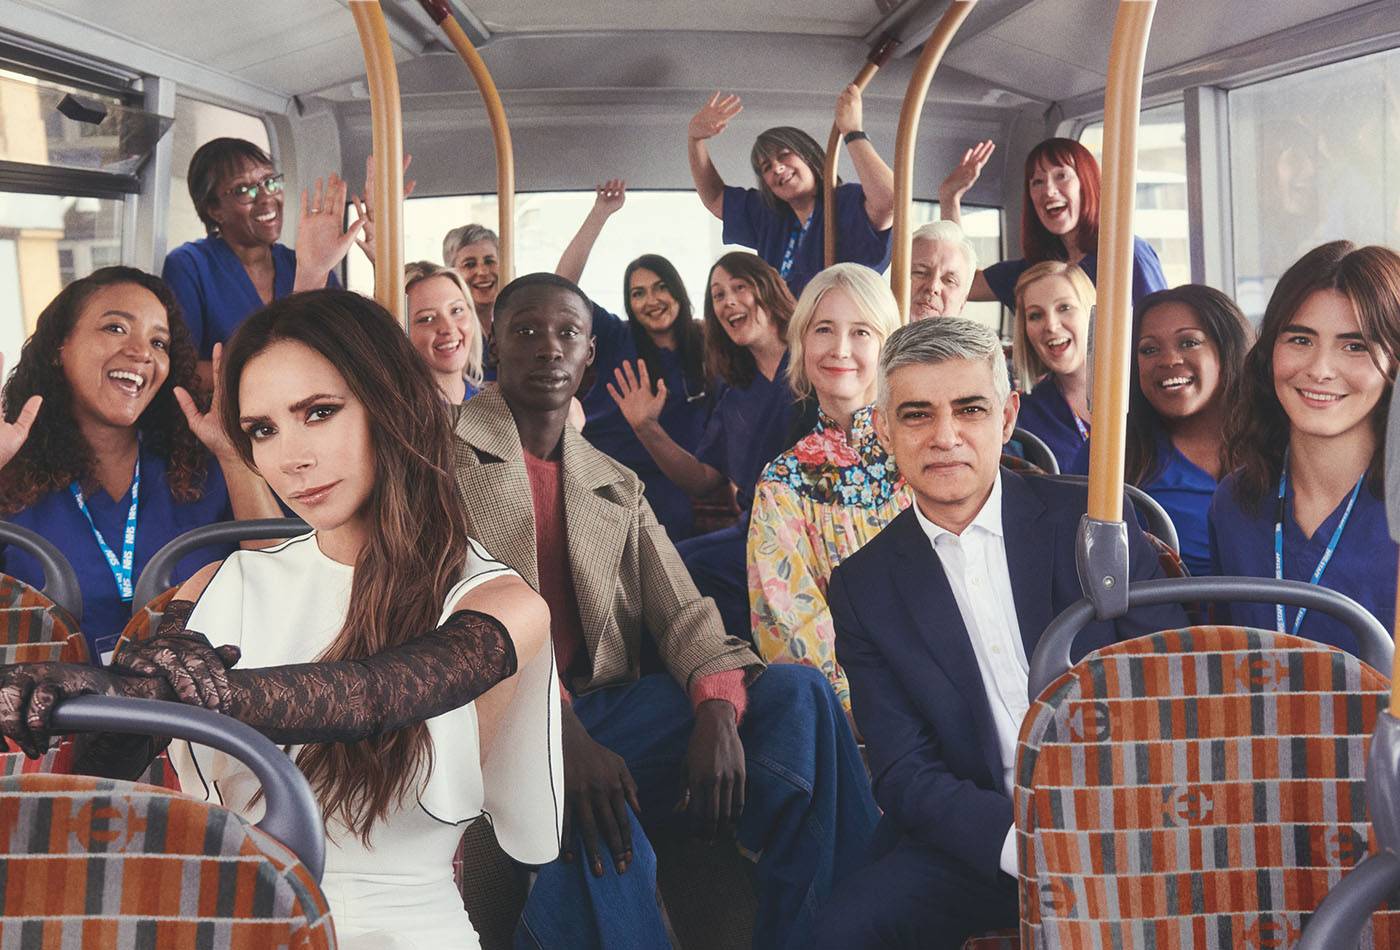 Podobnie jak zeszłoroczne wydarzenie w Nowym Jorku, „Vogue World: London” będzie prawdziwą modową ucztą, na której zaprezentowane zostaną projekty uznanych mistrzów i młodych talentów. Na zdjęciu: Victoria Beckham, sensacja z TikToka Khaby Lame, burmistrz Londynu Sadiq Khan, zastępczyni burmistrza ds. kultury Justine Simons i chór NHS. Fot. Charlotte Wales